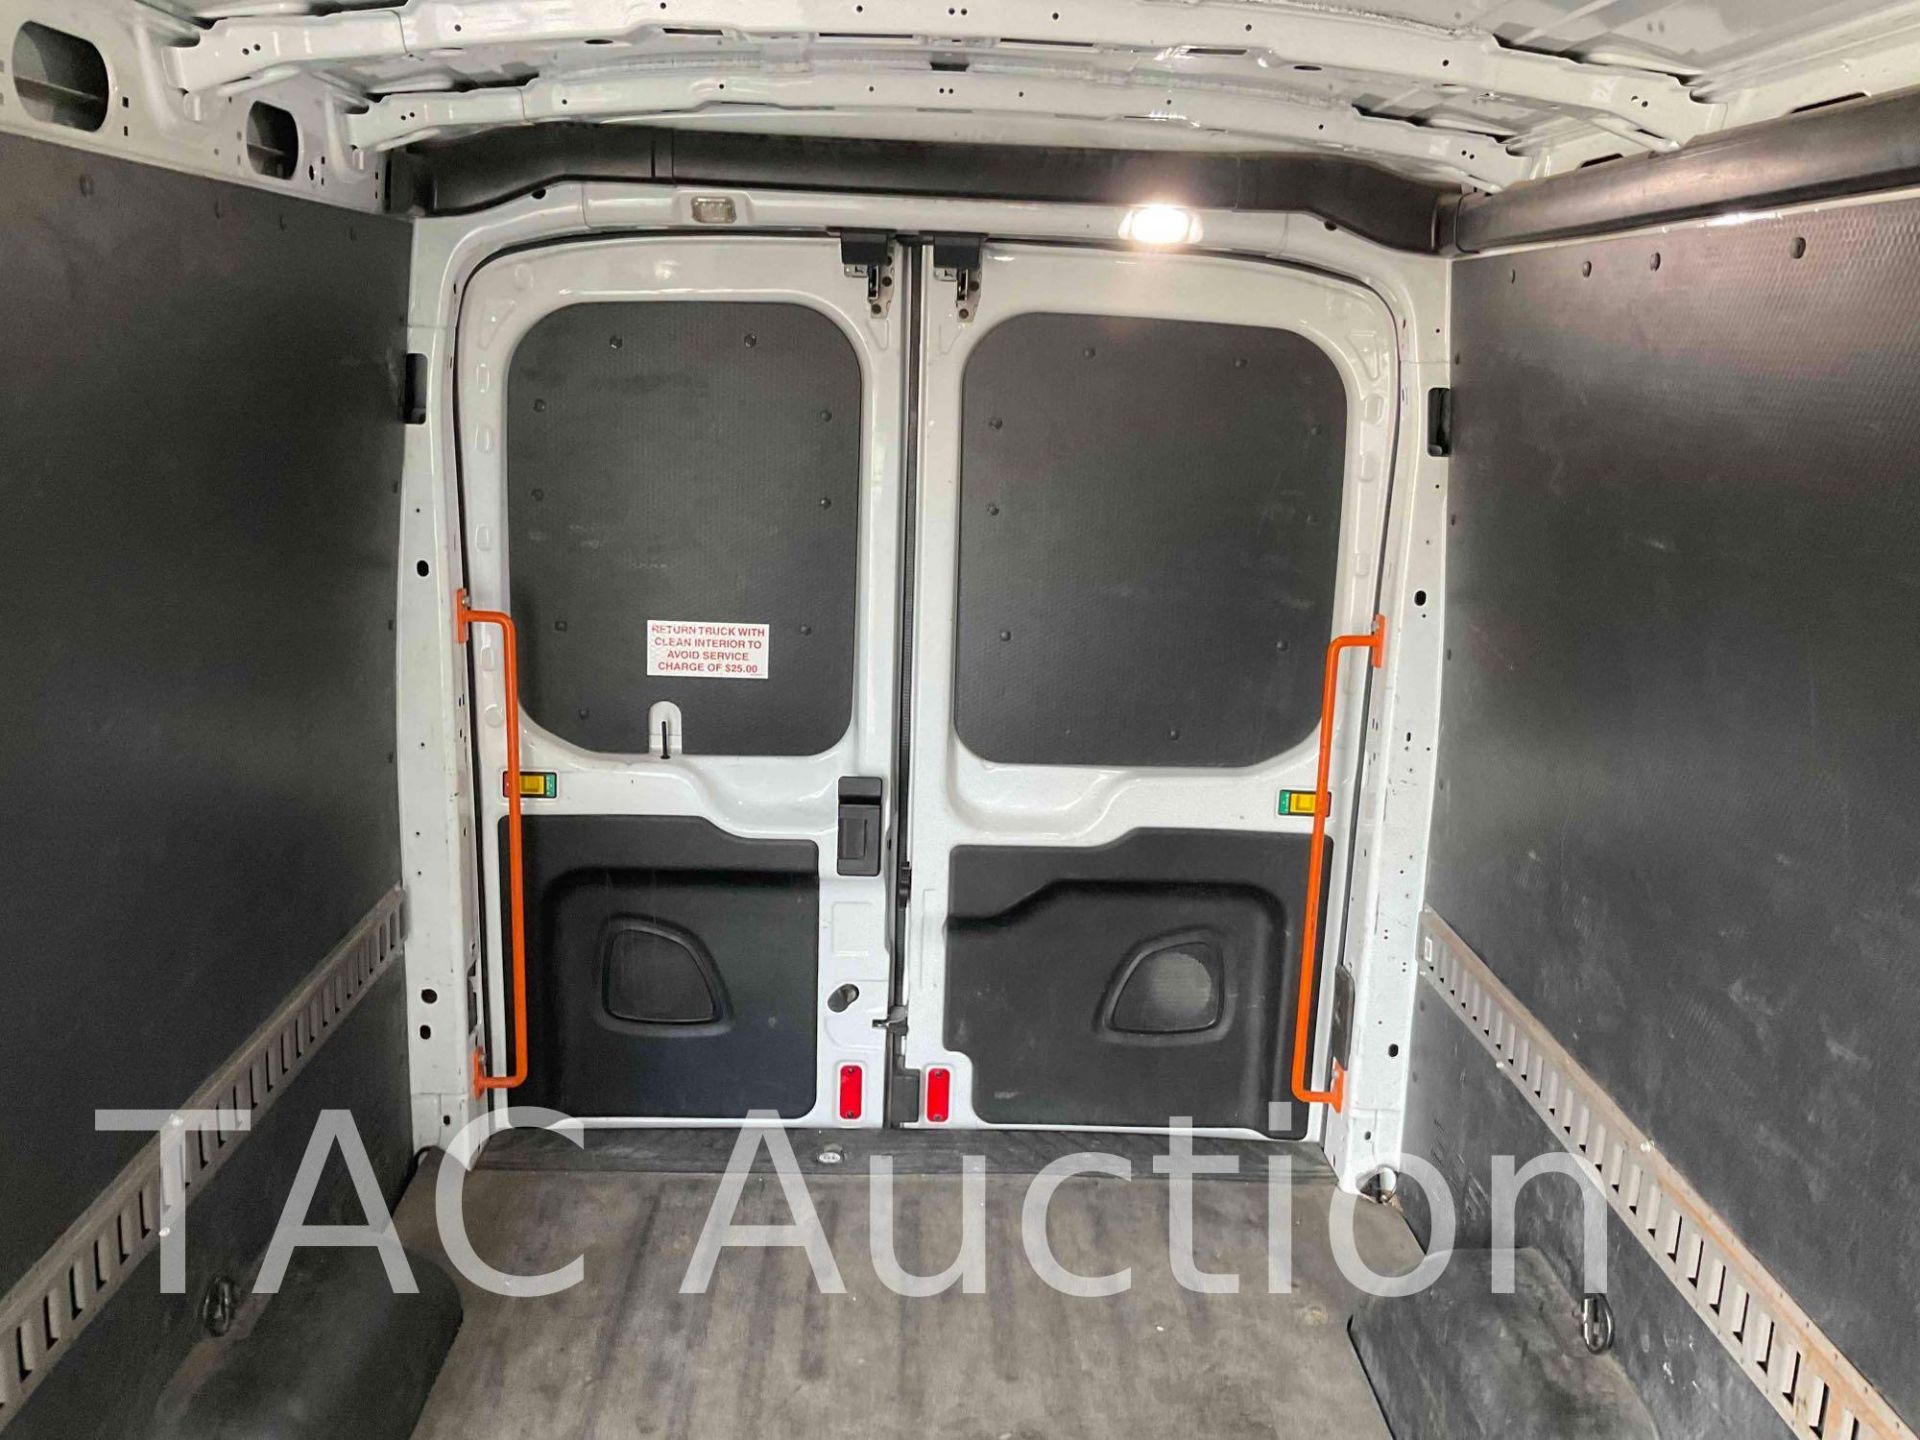 2019 Ford Transit 150 Cargo Van - Image 30 of 49